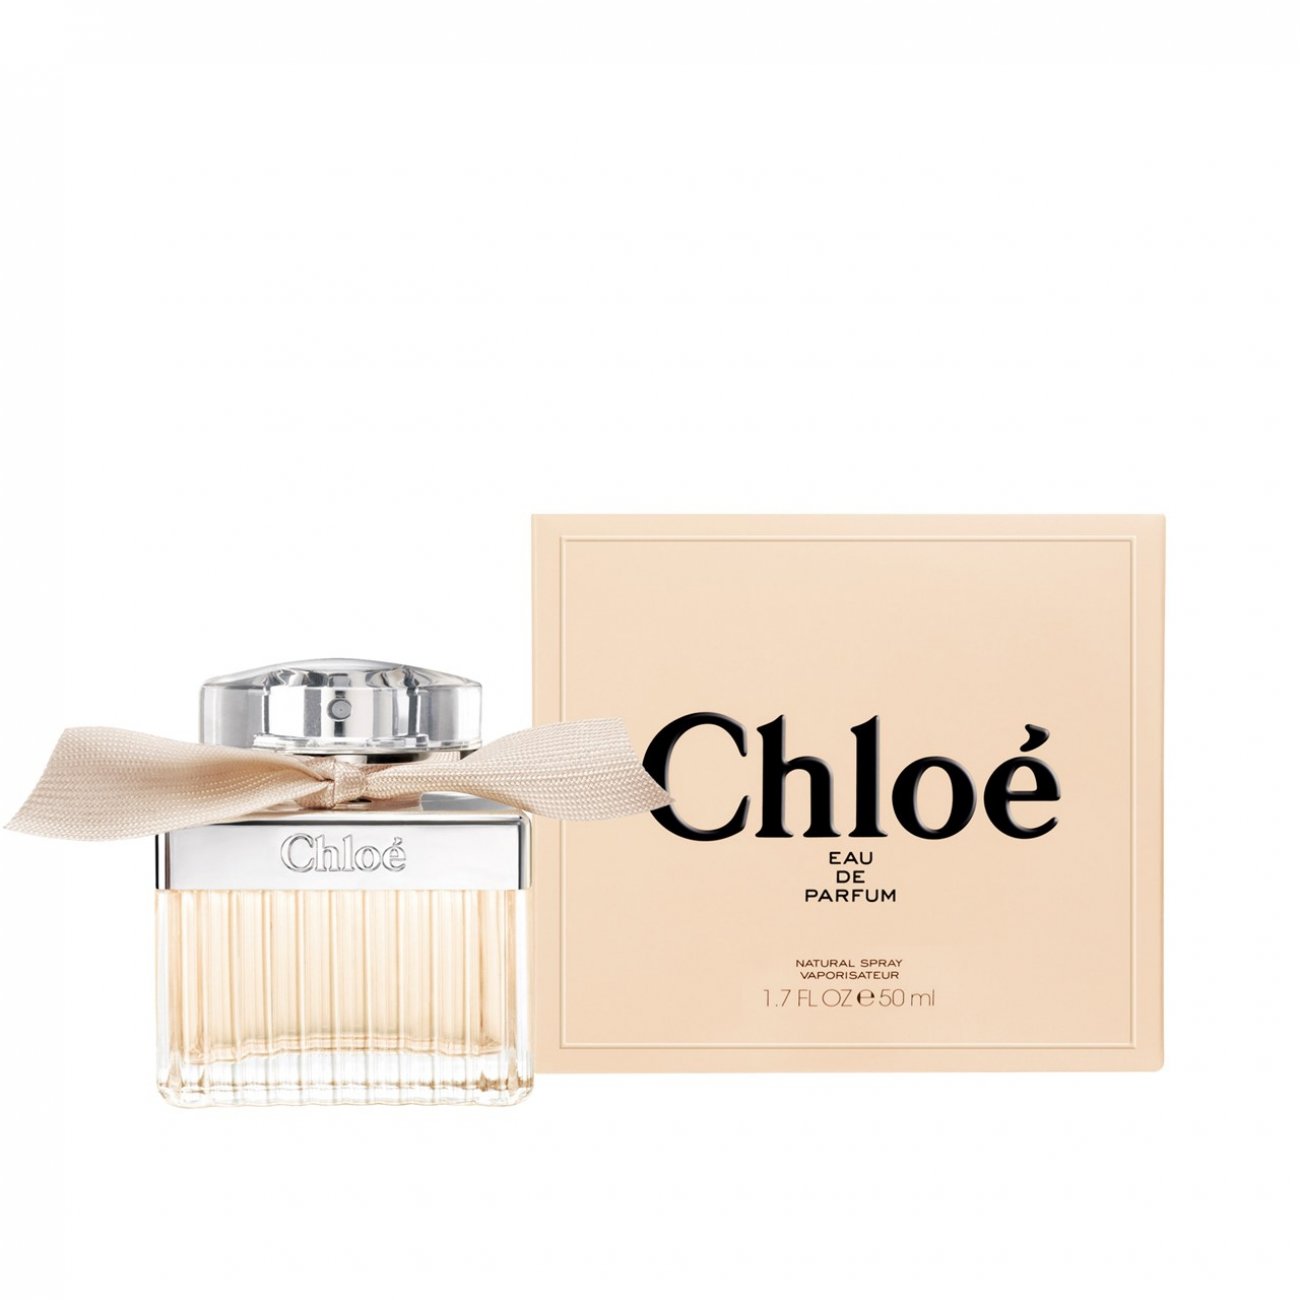 3 Vintage 17oz Perfume Bottles Christian Dior Poison Anais Anais Chloe  Narcisse  eBay